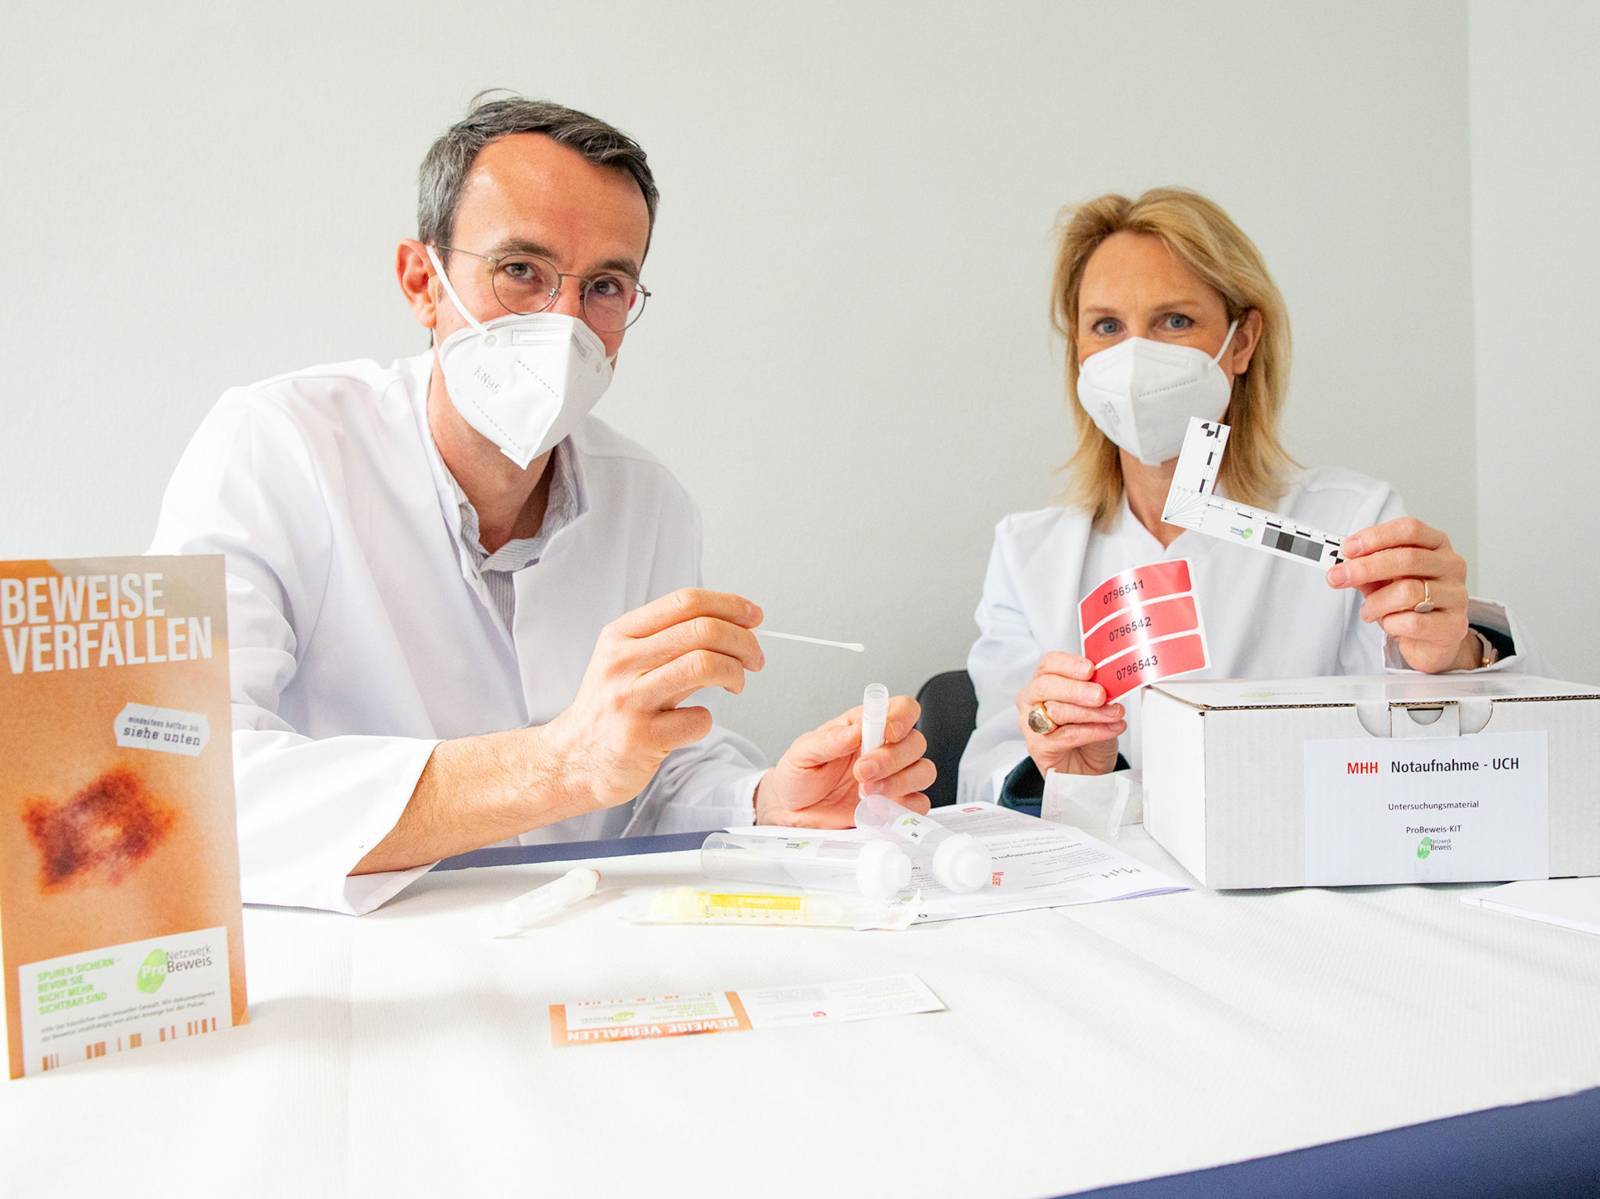 Eine Frau und ein Mann mit Nasen-Mundschutz-Masken in weißen Kitteln